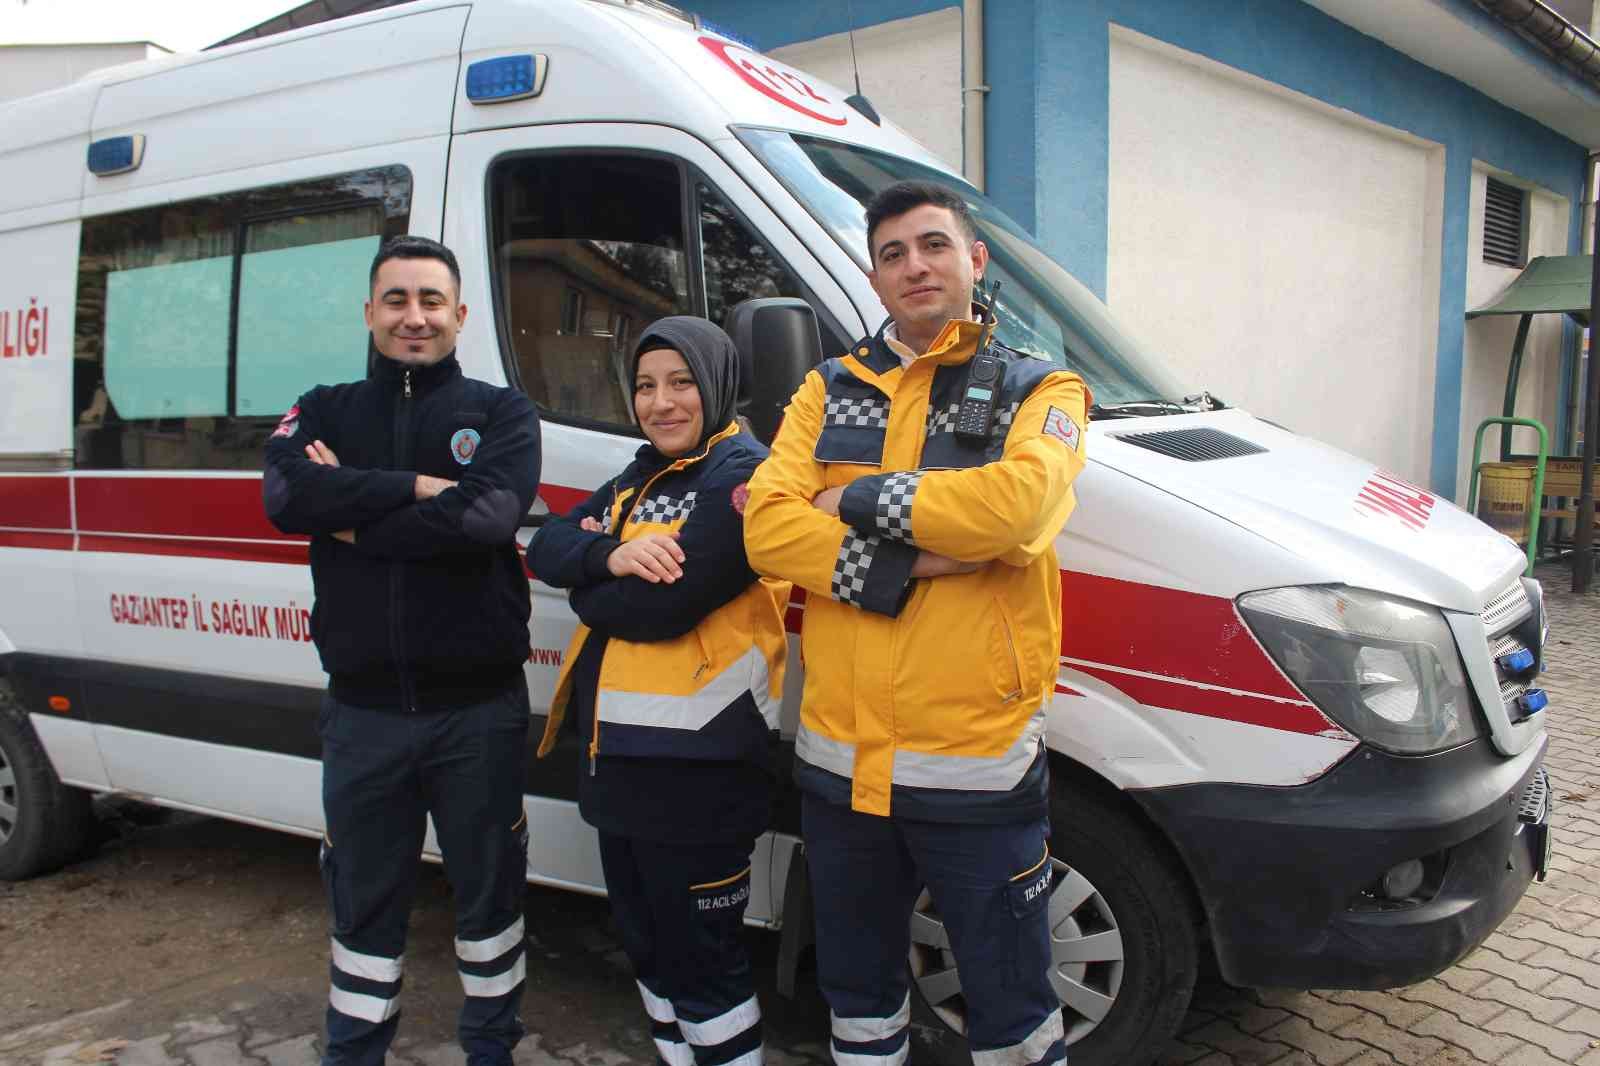 Acil Sağlık ekipleri, yaşamla ölüm arasındaki ince çizgide zamanla yarışıyor #gaziantep